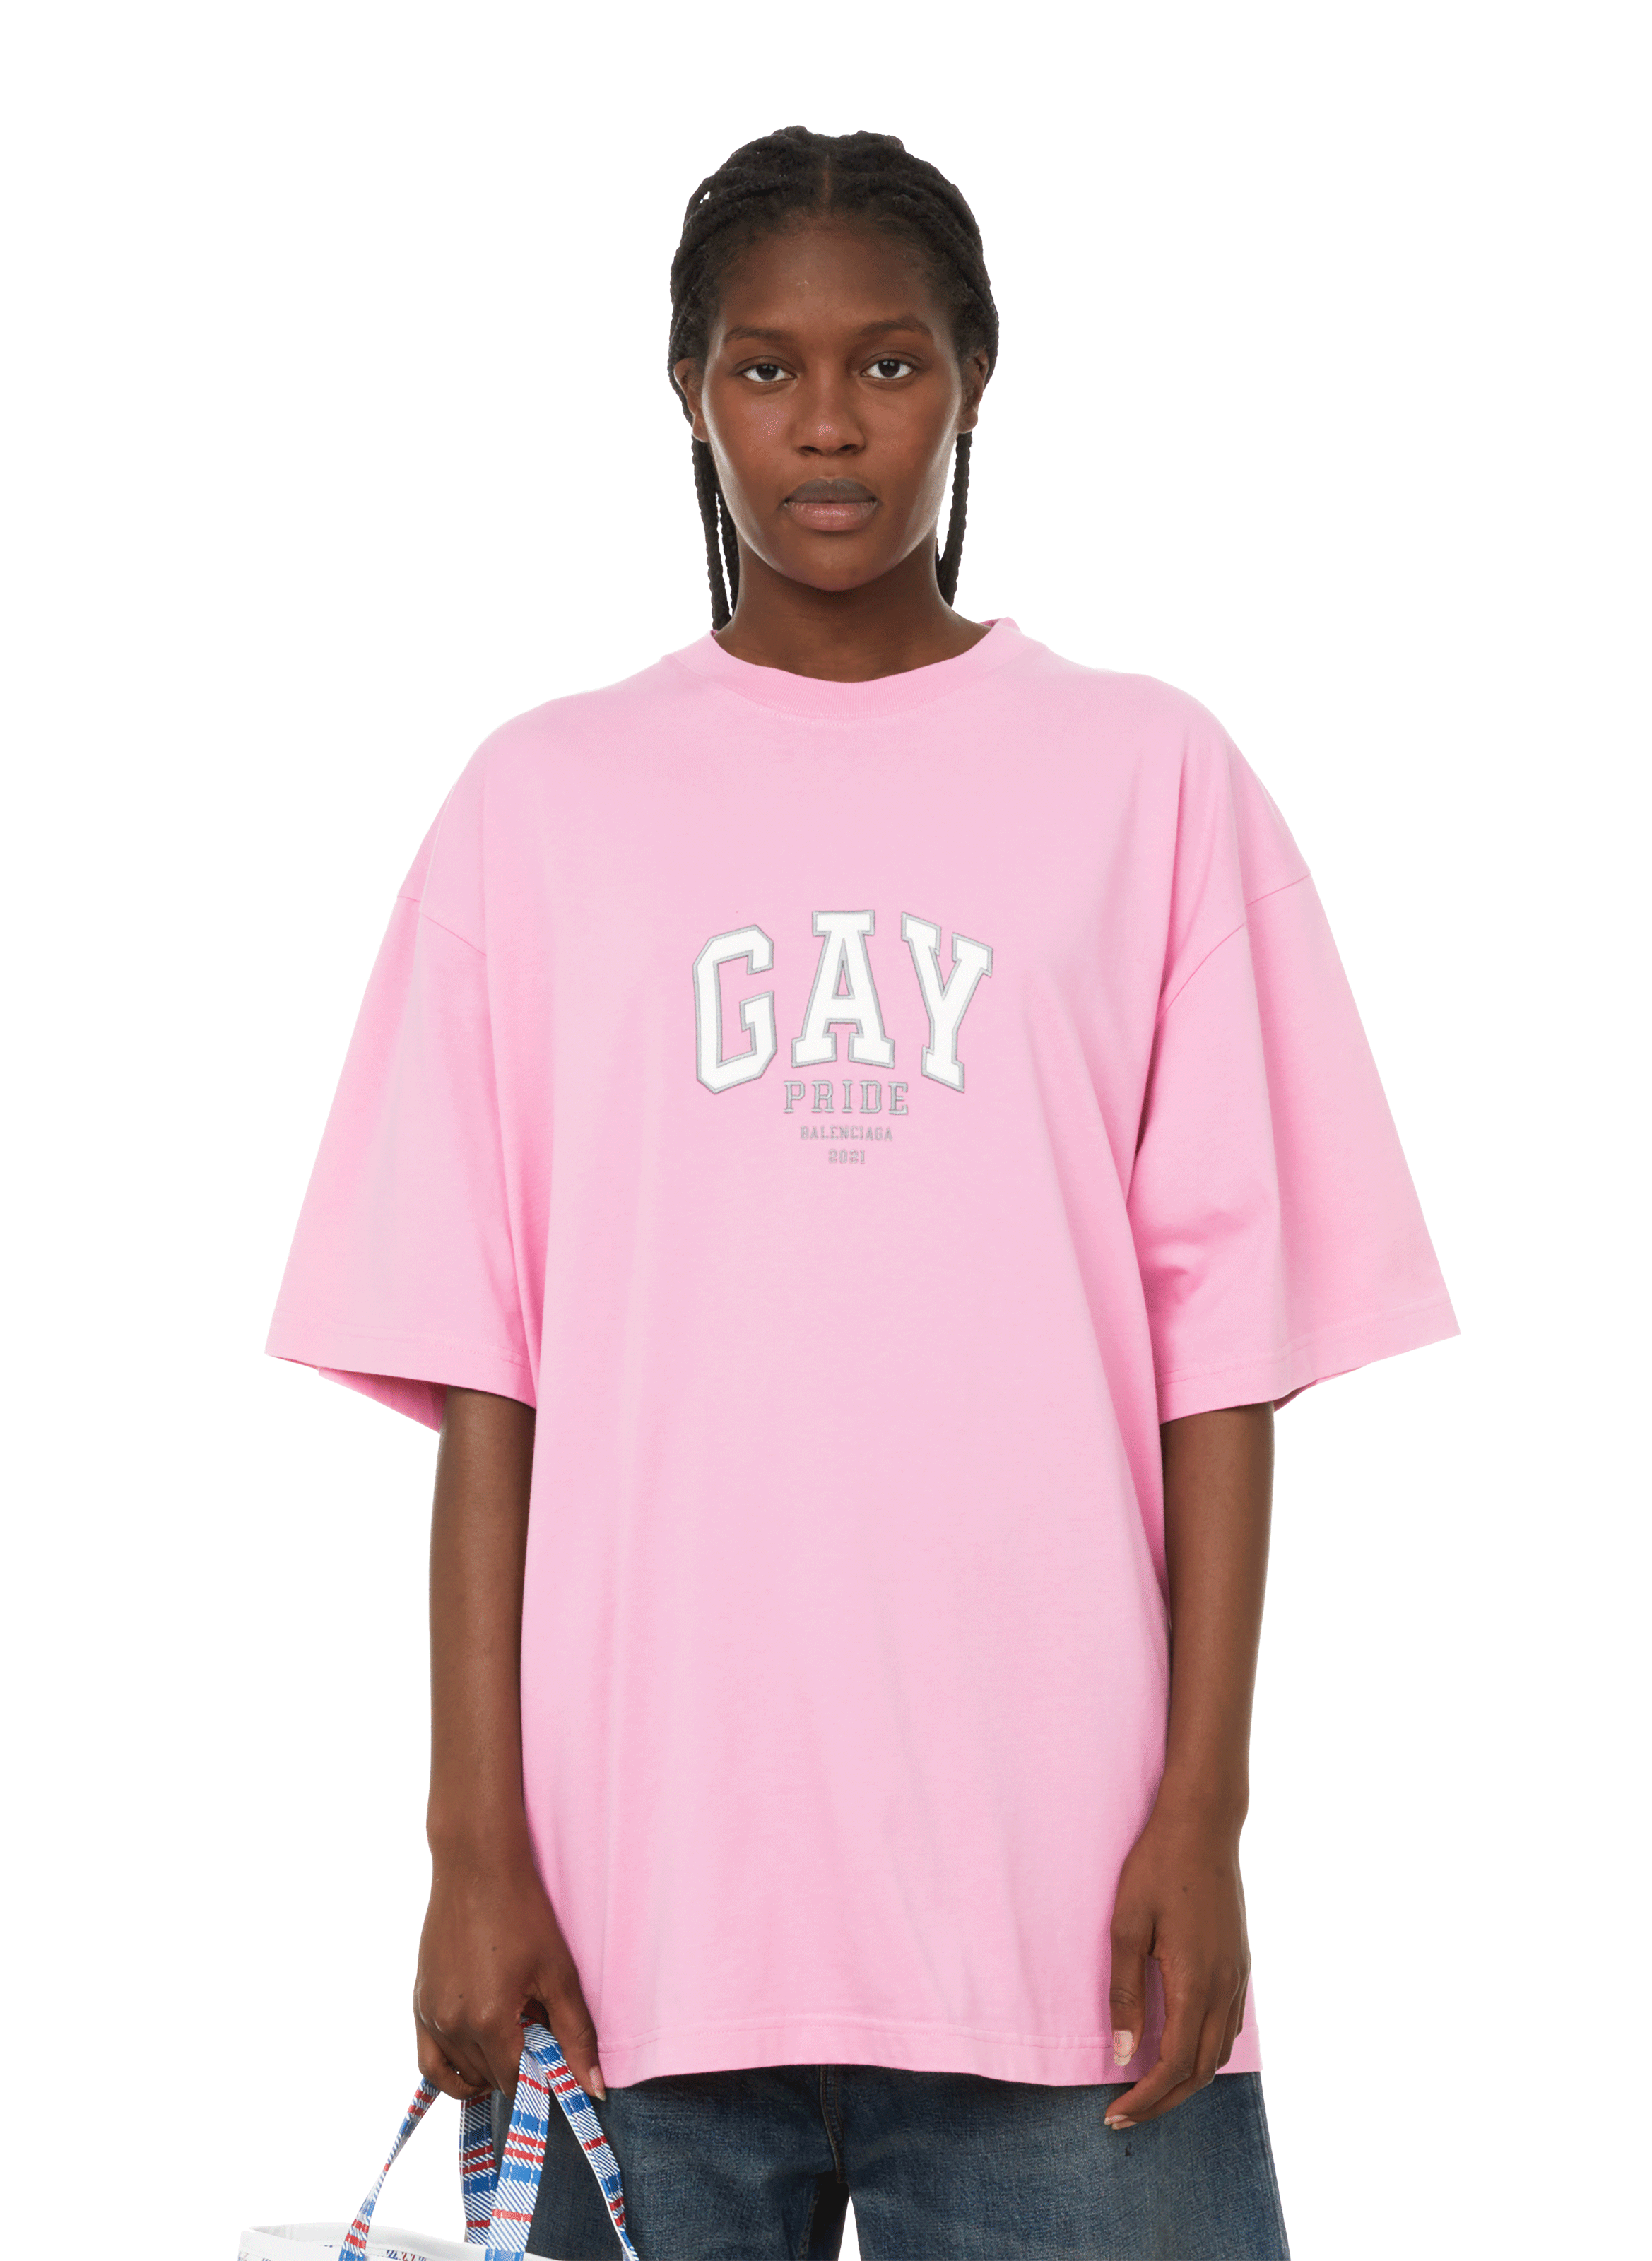 gay pride shirt 3x